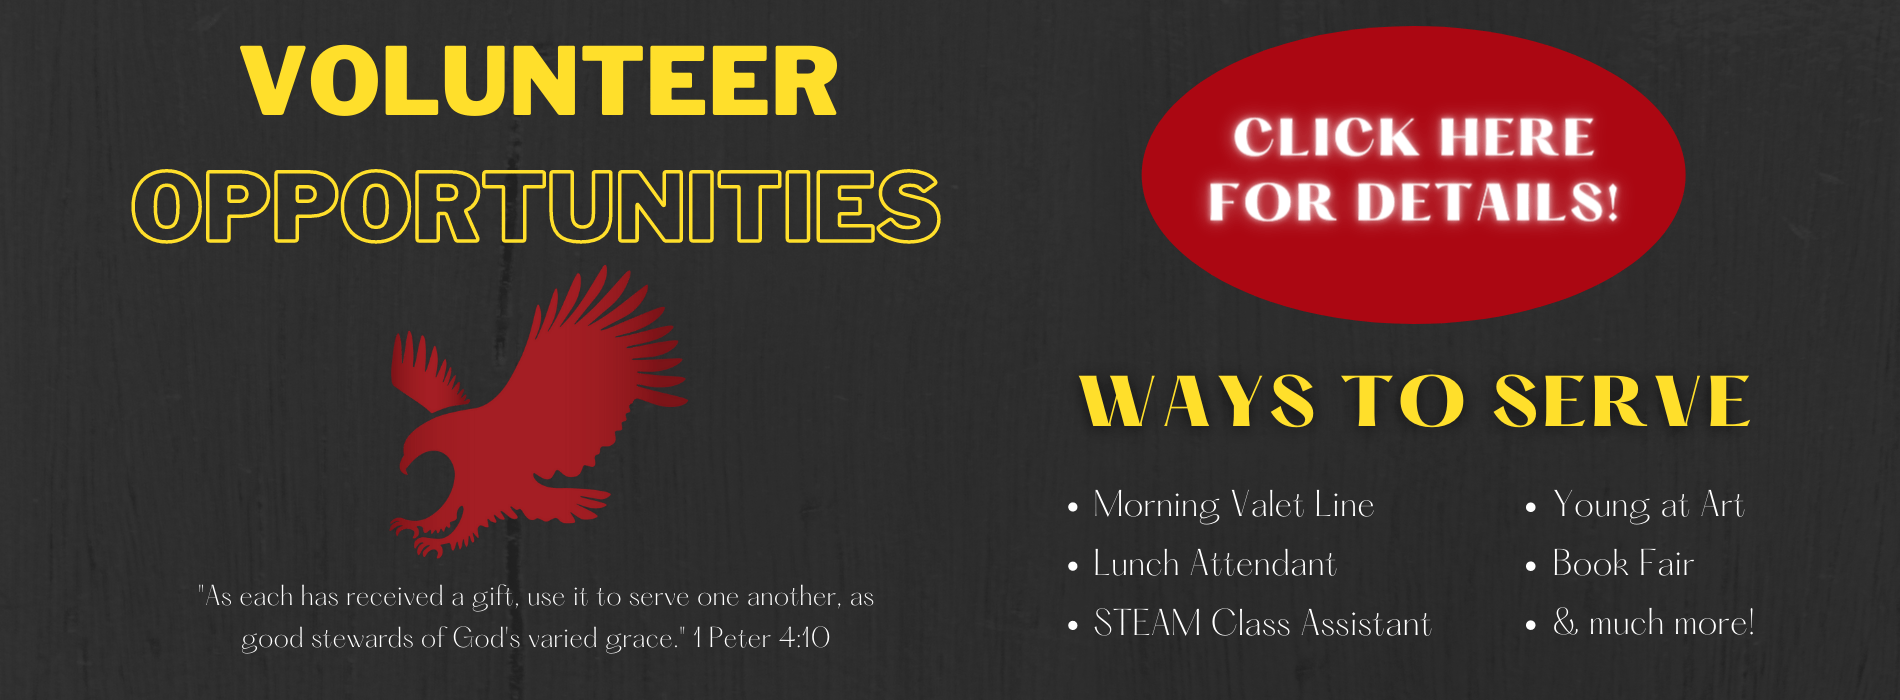 Volunteer Opportunities at Valor - links to external volunteer site in new window